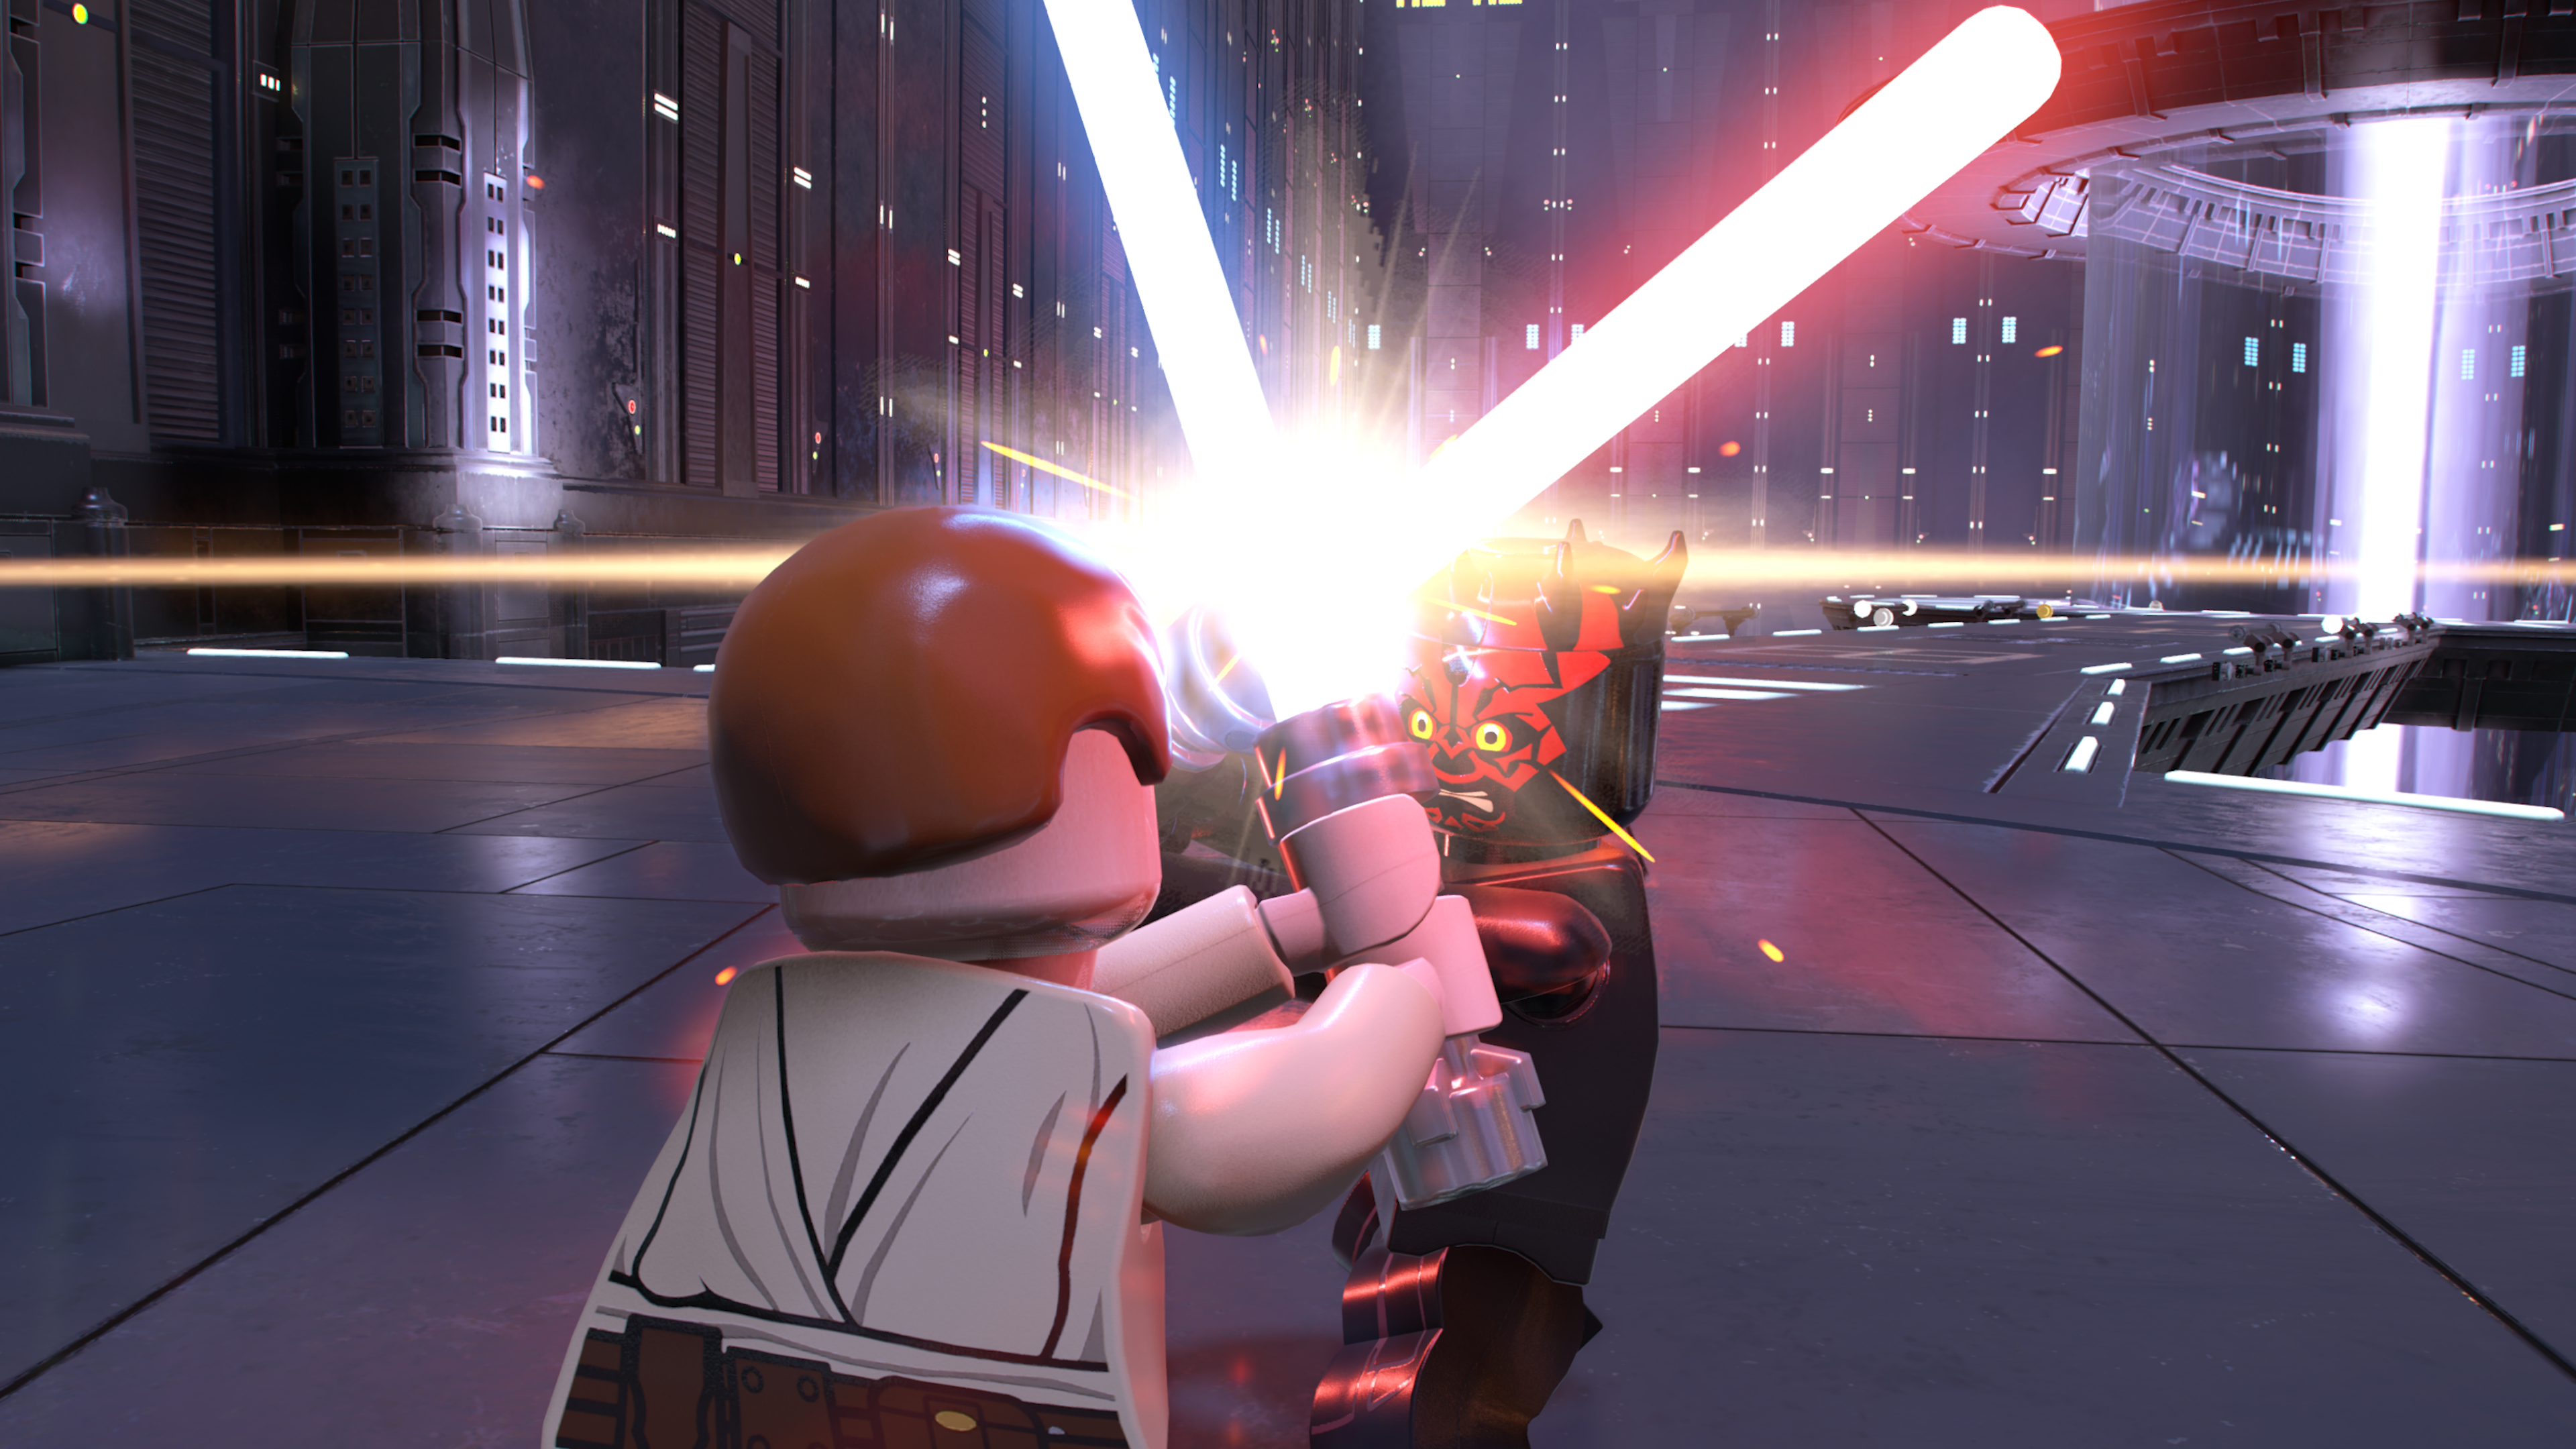 LEGO Star Wars La saga Skywalker confirma sus requisitos